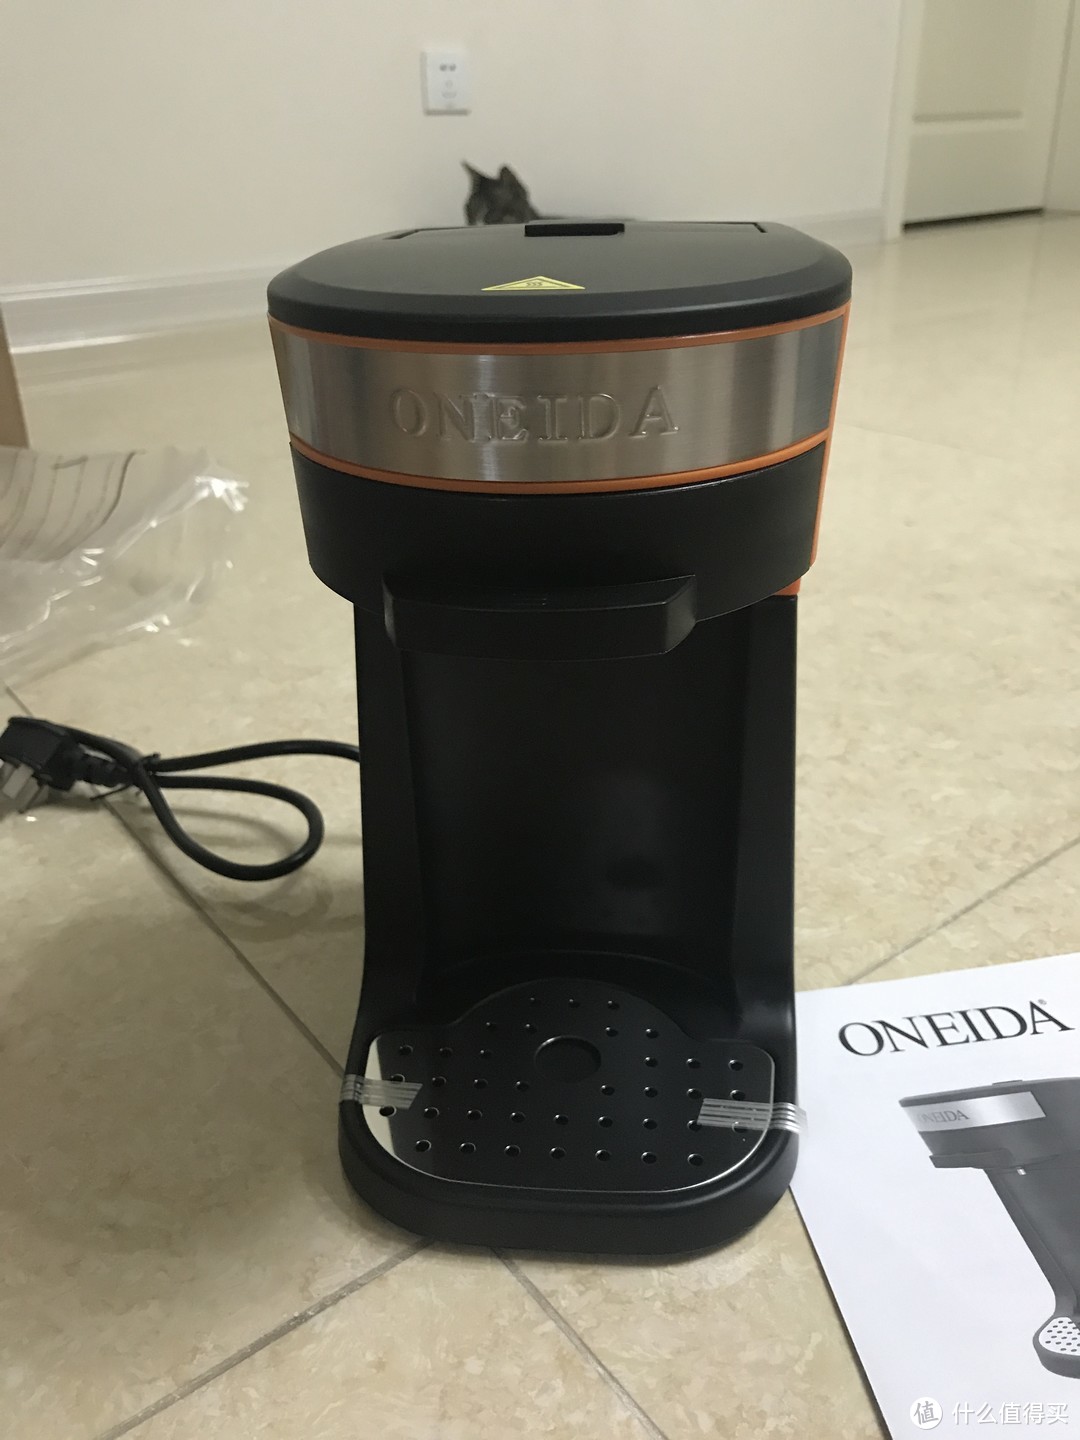 ONEIDA 奥奈达 N1多功能懒人咖啡机---拖延症患者的